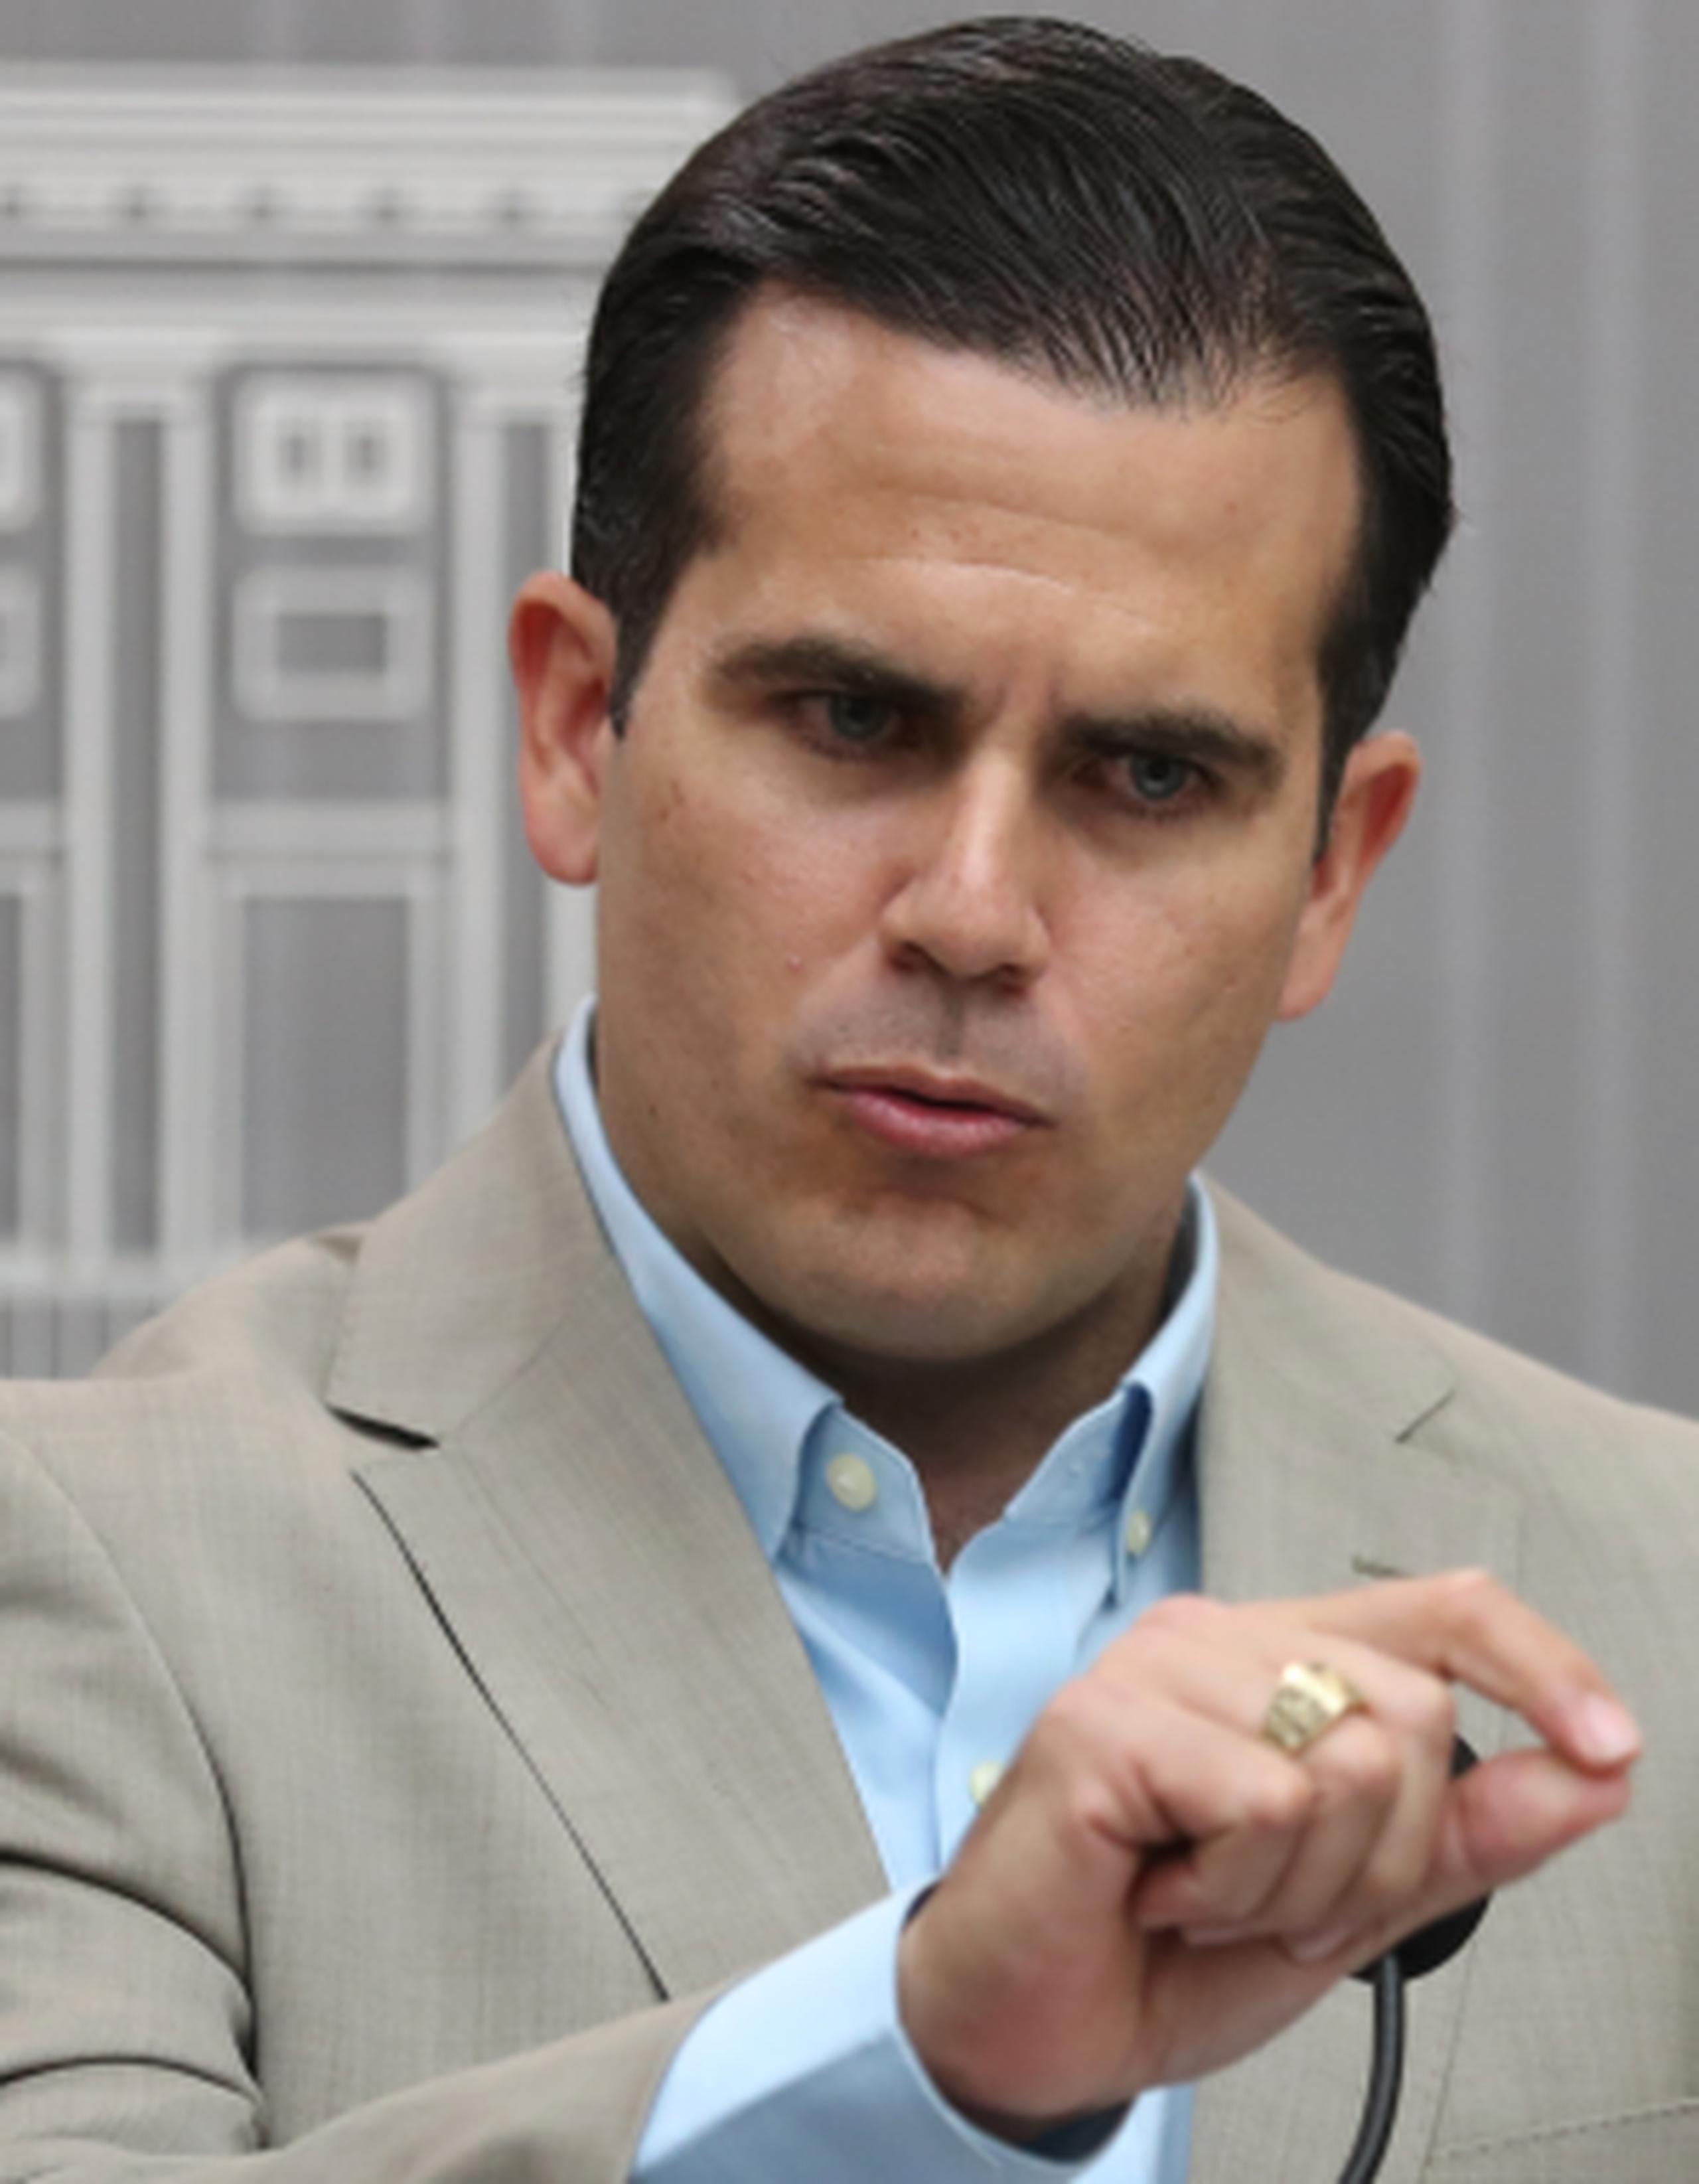 Rosselló denunció que la actitud congresional responde a que no hay representación de Puerto Rico con voto en el Congreso. (juan.martinez@gfrmedia.com)